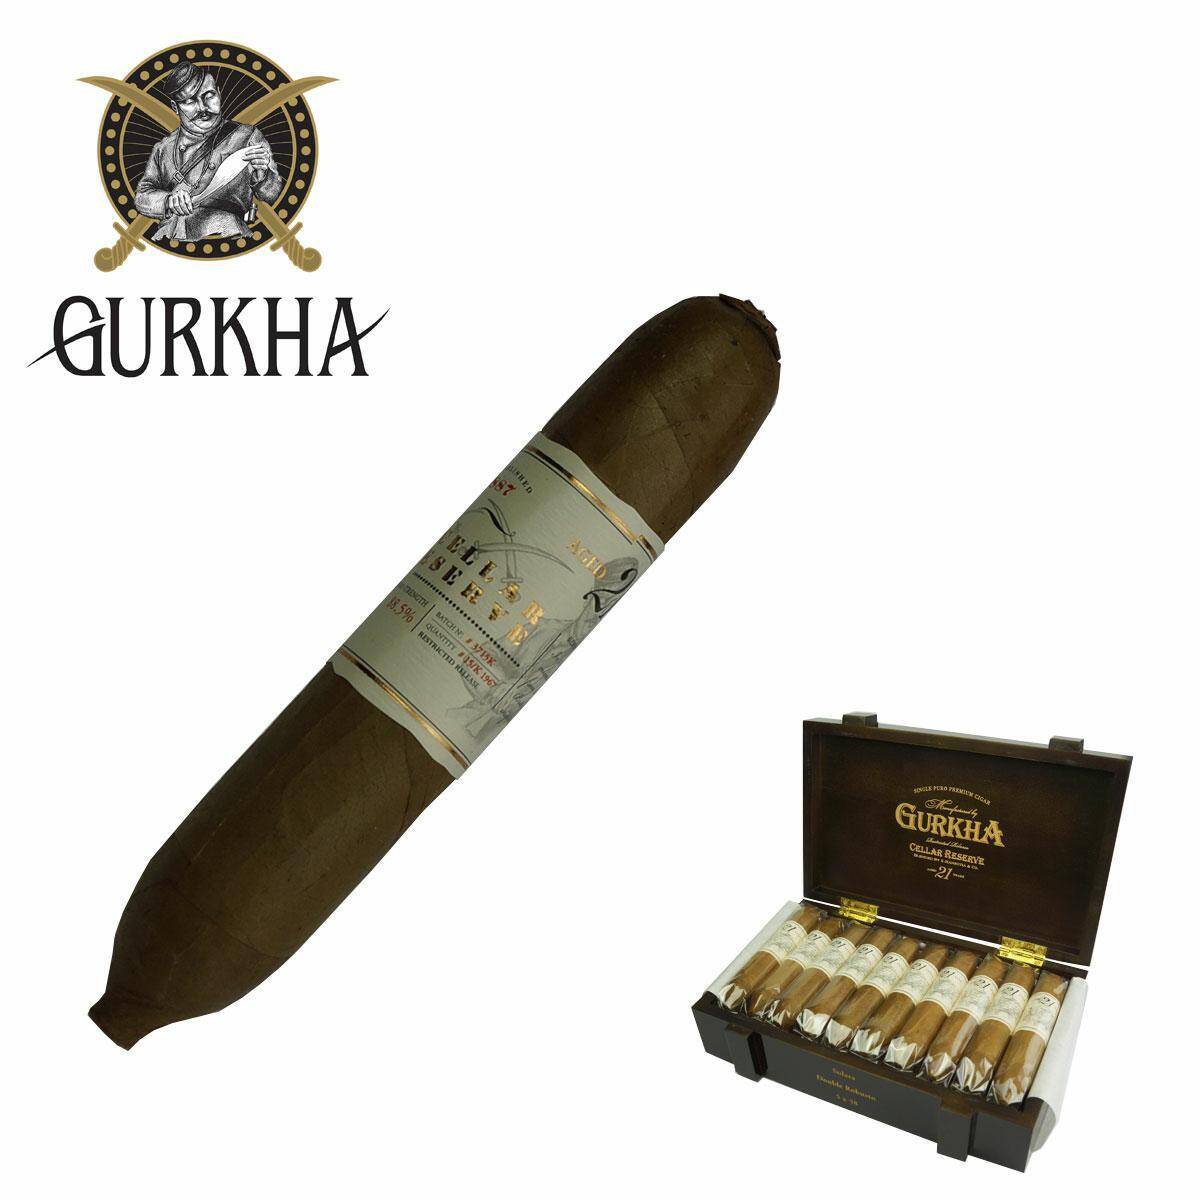 Gurkha - 21 Year Solara Double Robusto/1